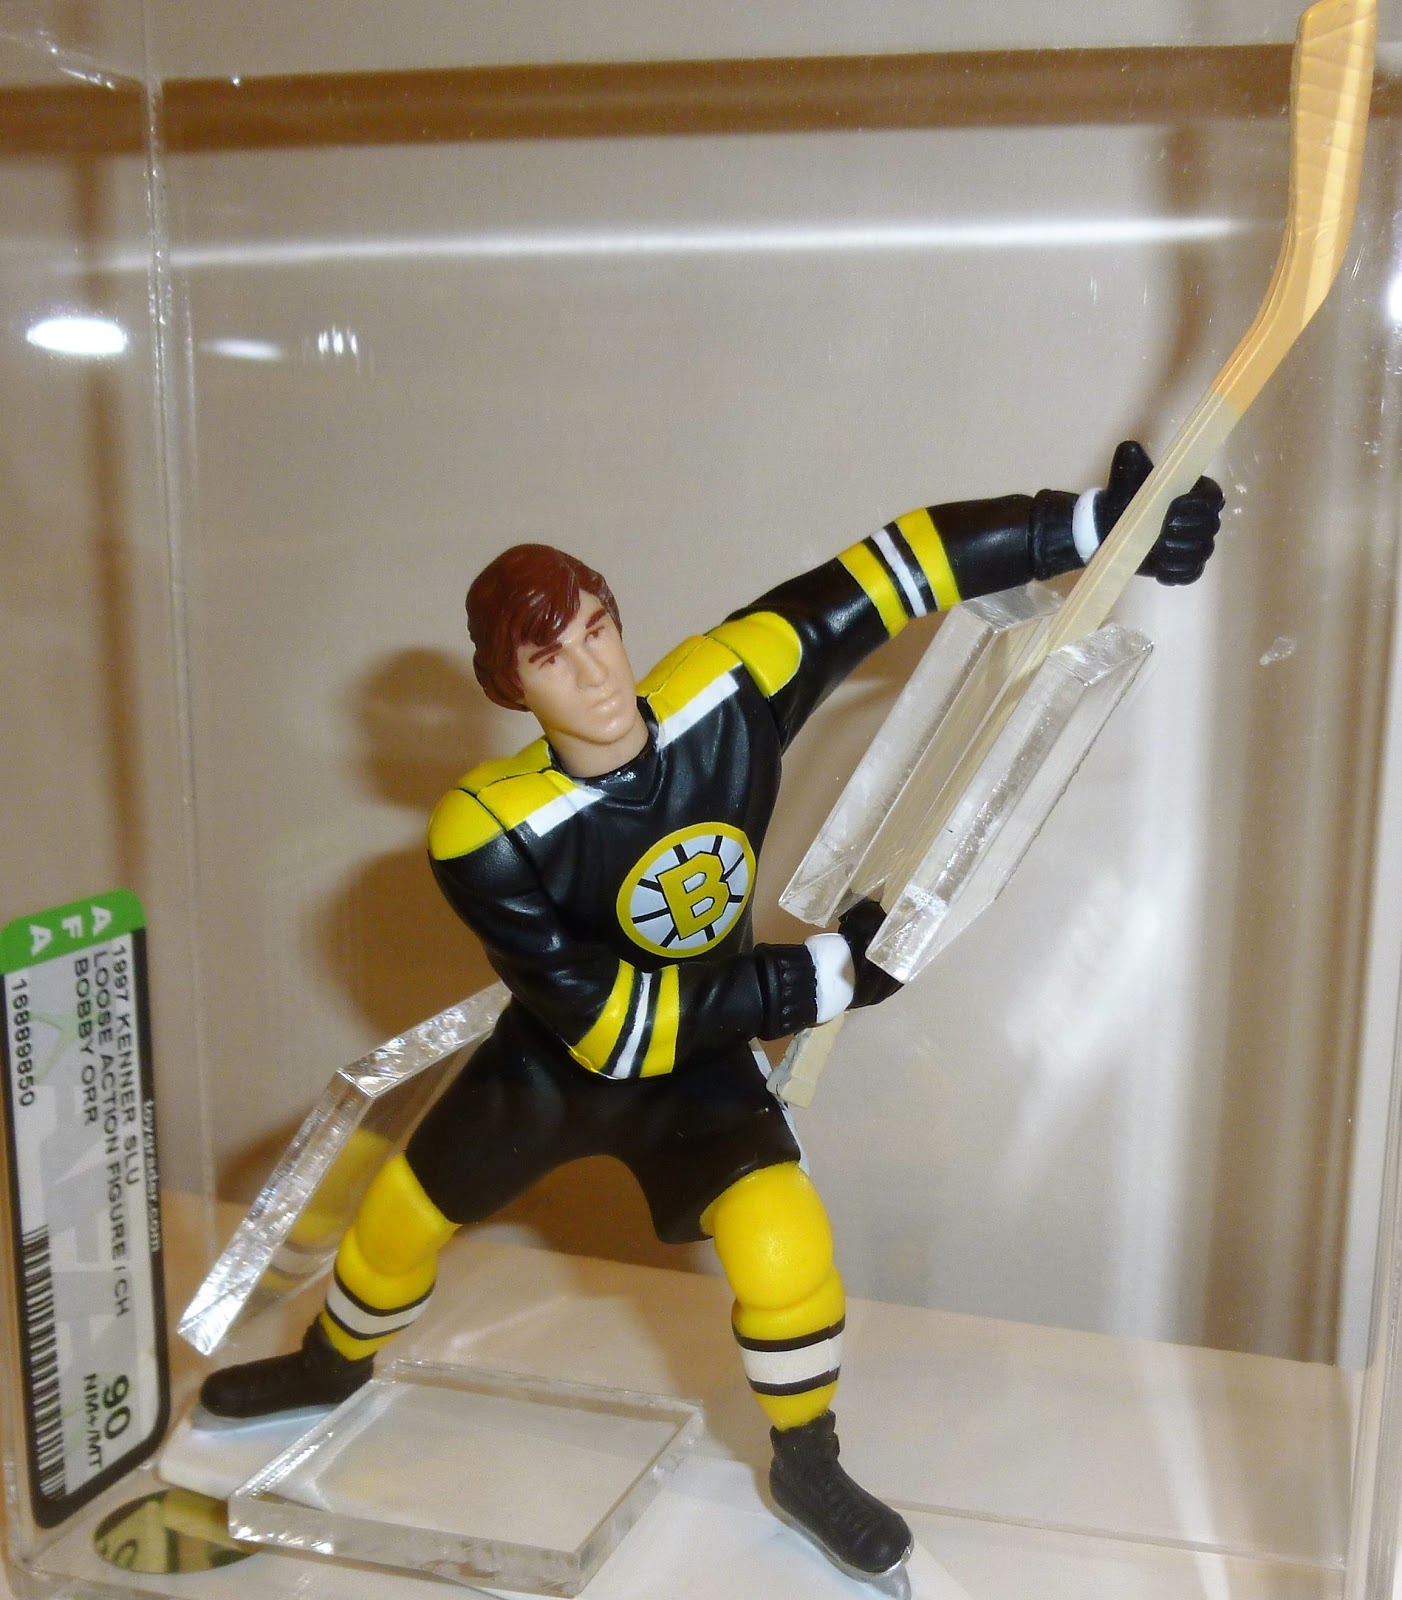 2000 Derian Hatcher Dallas Stars NHL Starting Lineup Toy Figure